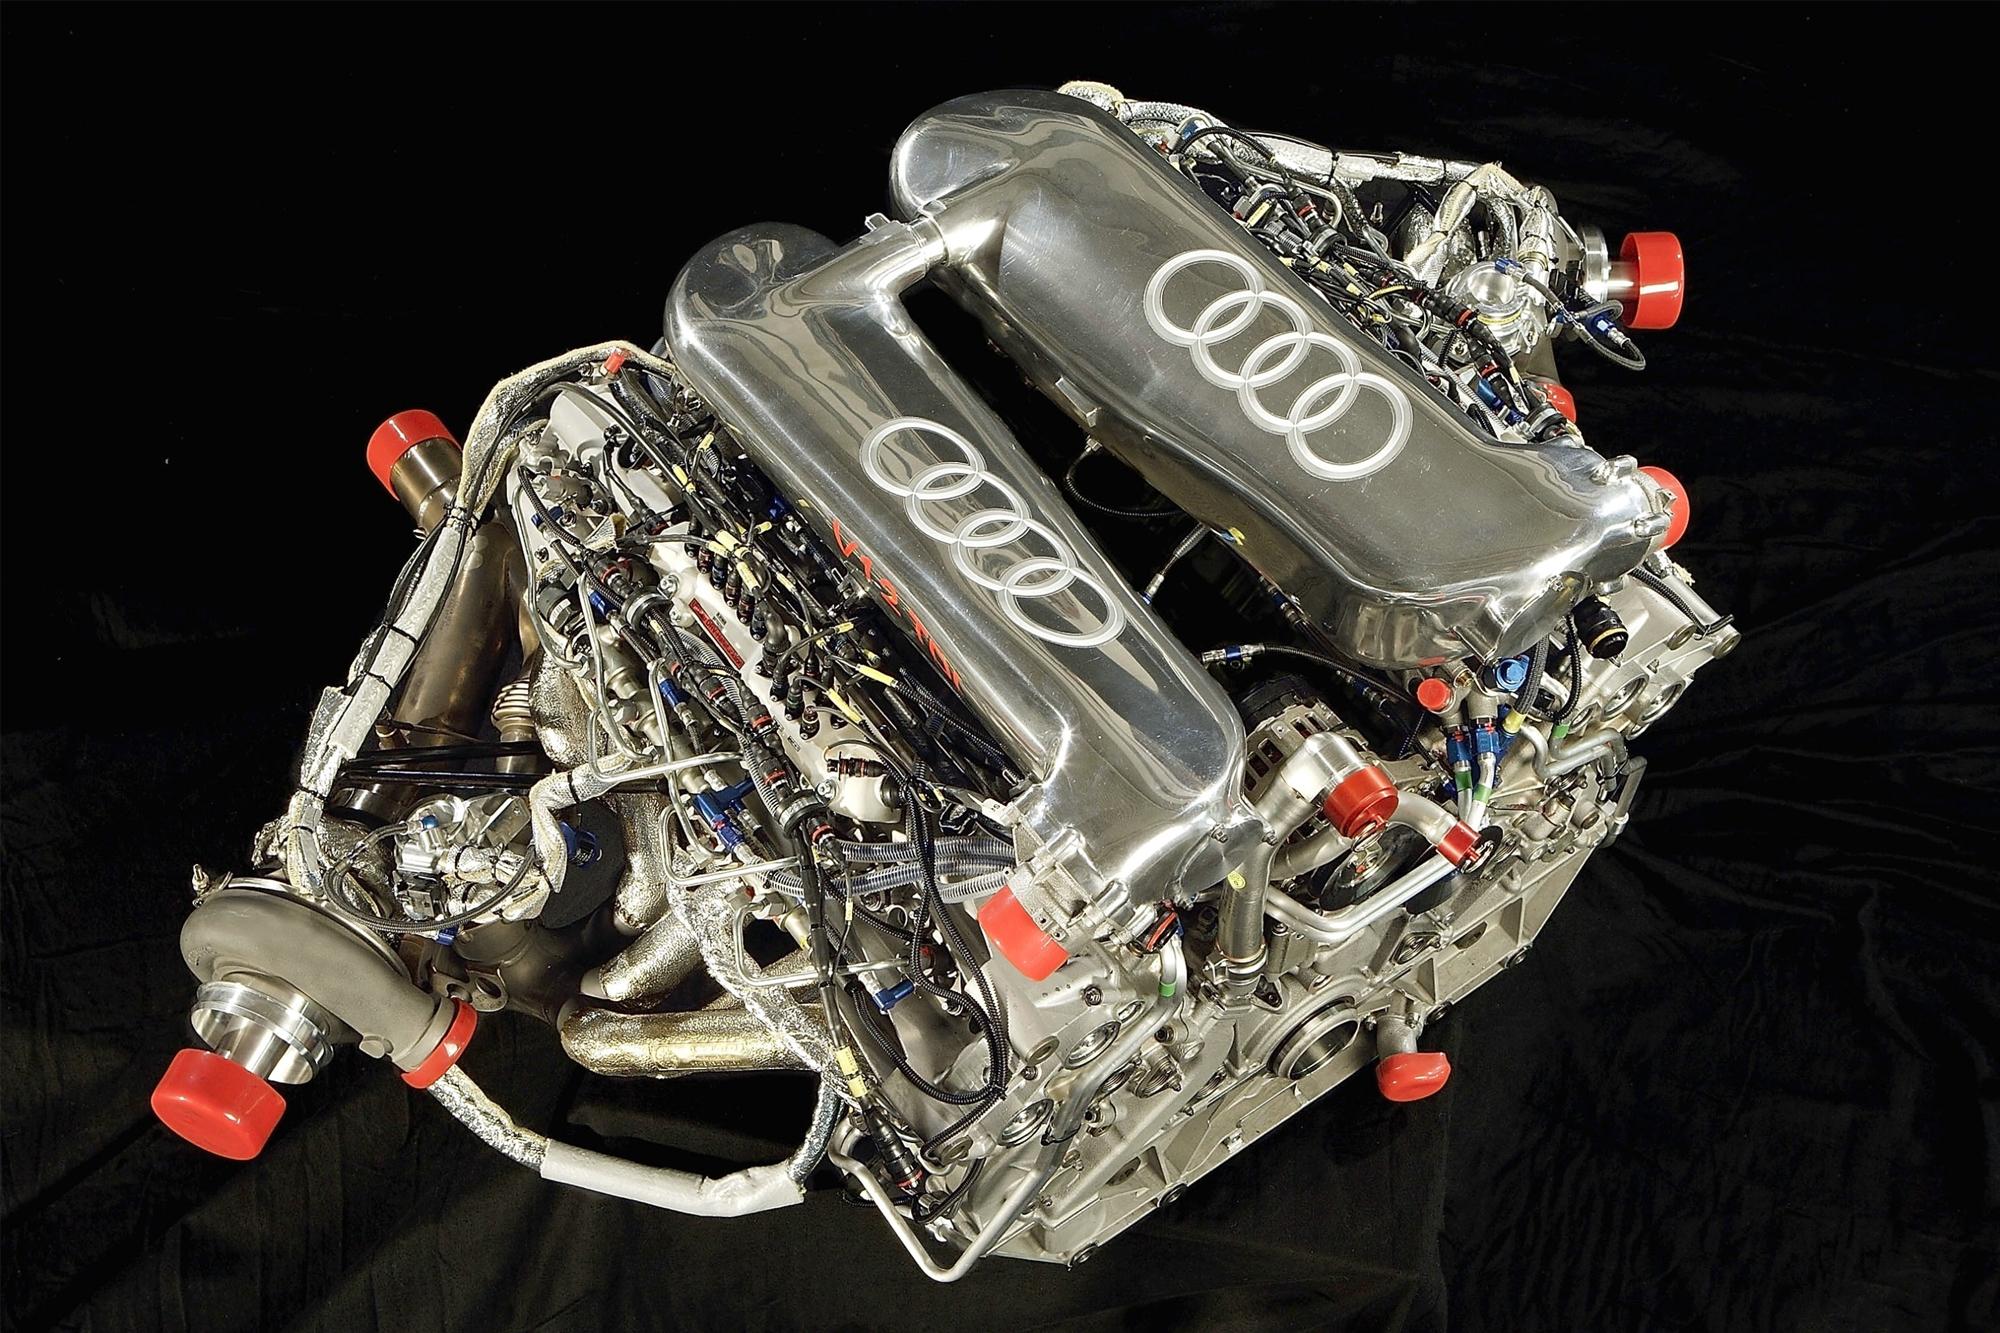 Σταματάει την ανάπτυξη νέων θερμικών κινητήρων η Audi